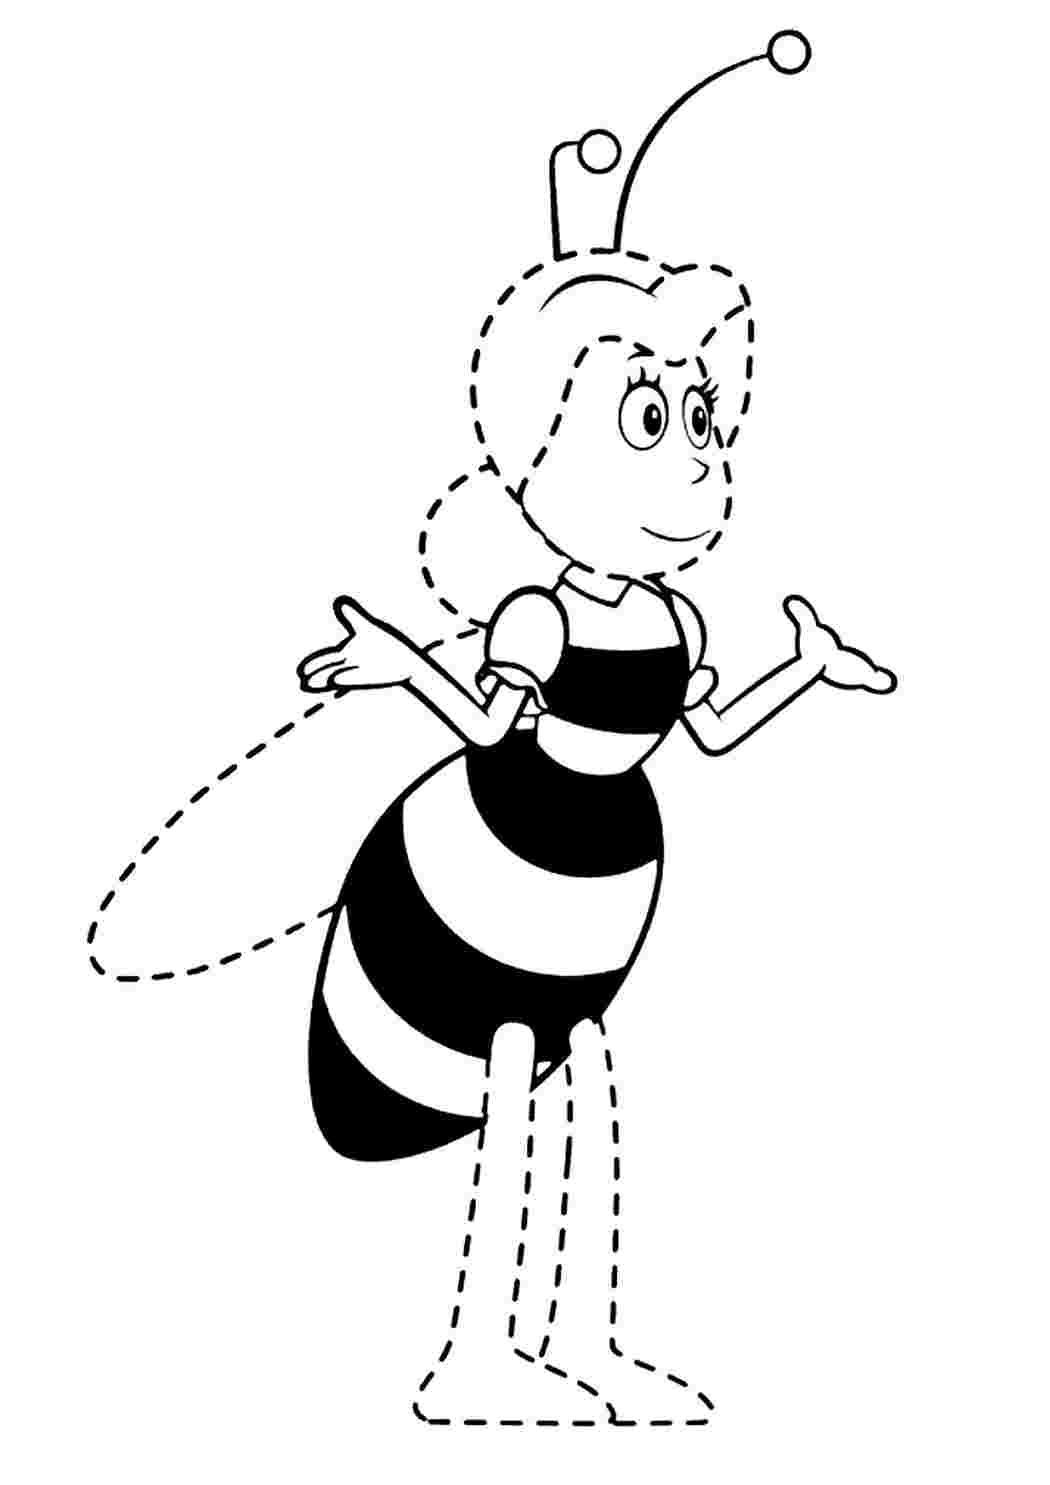 Пчелка раскраска распечатать. Пчелка раскраска. Раскраска пчёлка для детей. Пчела раскраска. Пчелка раскраска для детей 3-4 лет.